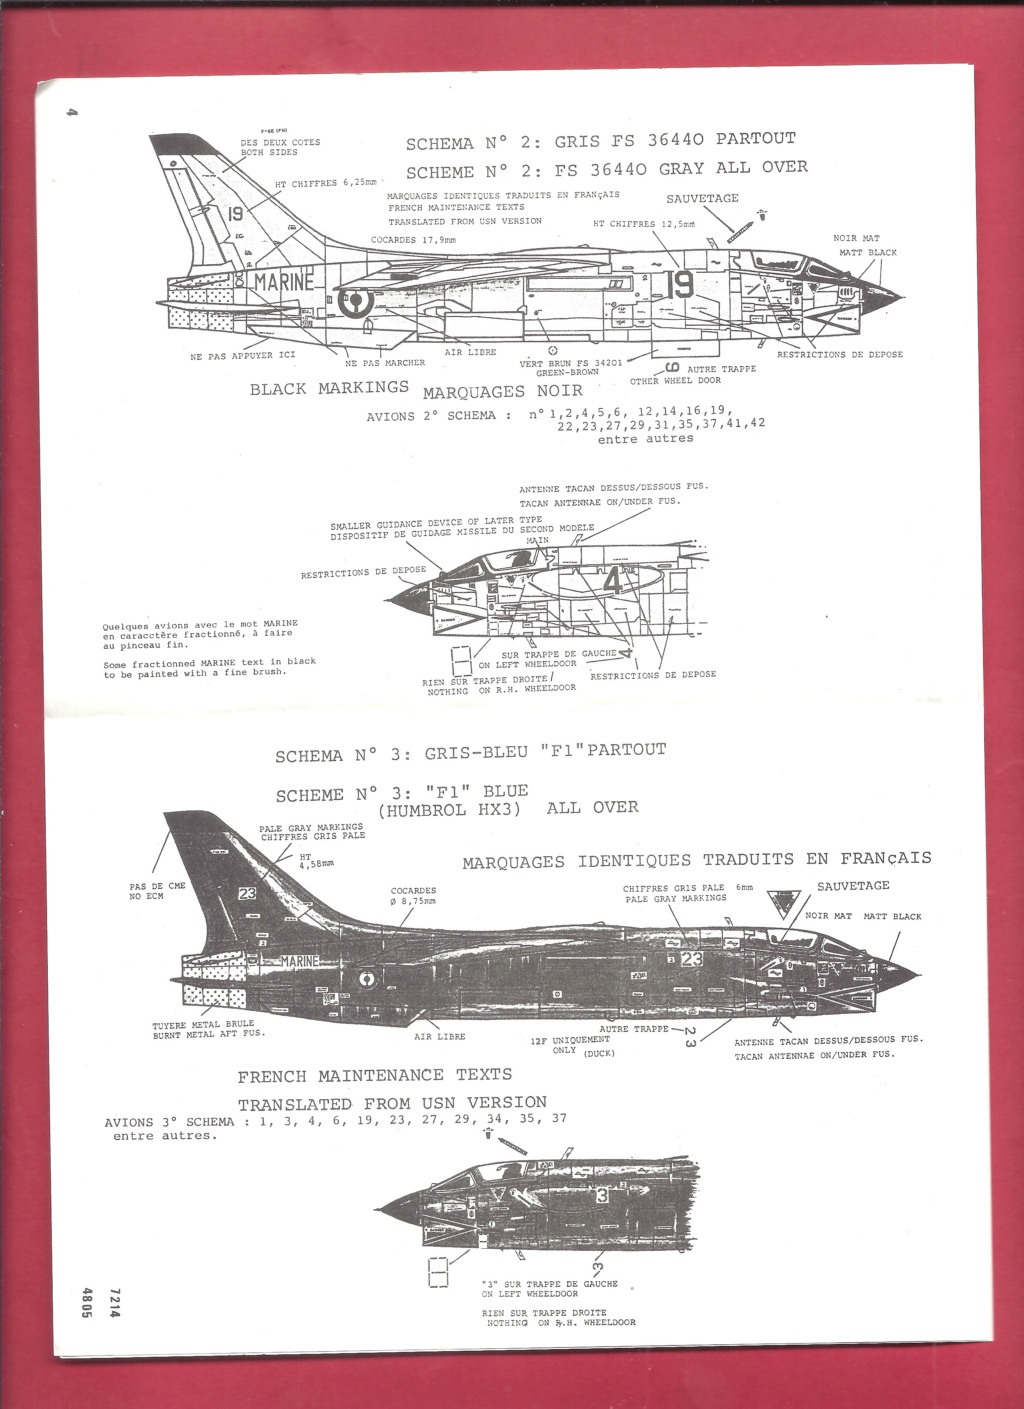 [CARPENA] Planche de décals LTV F8E (FN) CRUSADER 1964-1988 1/72ème Réf 72.14 Carpen58